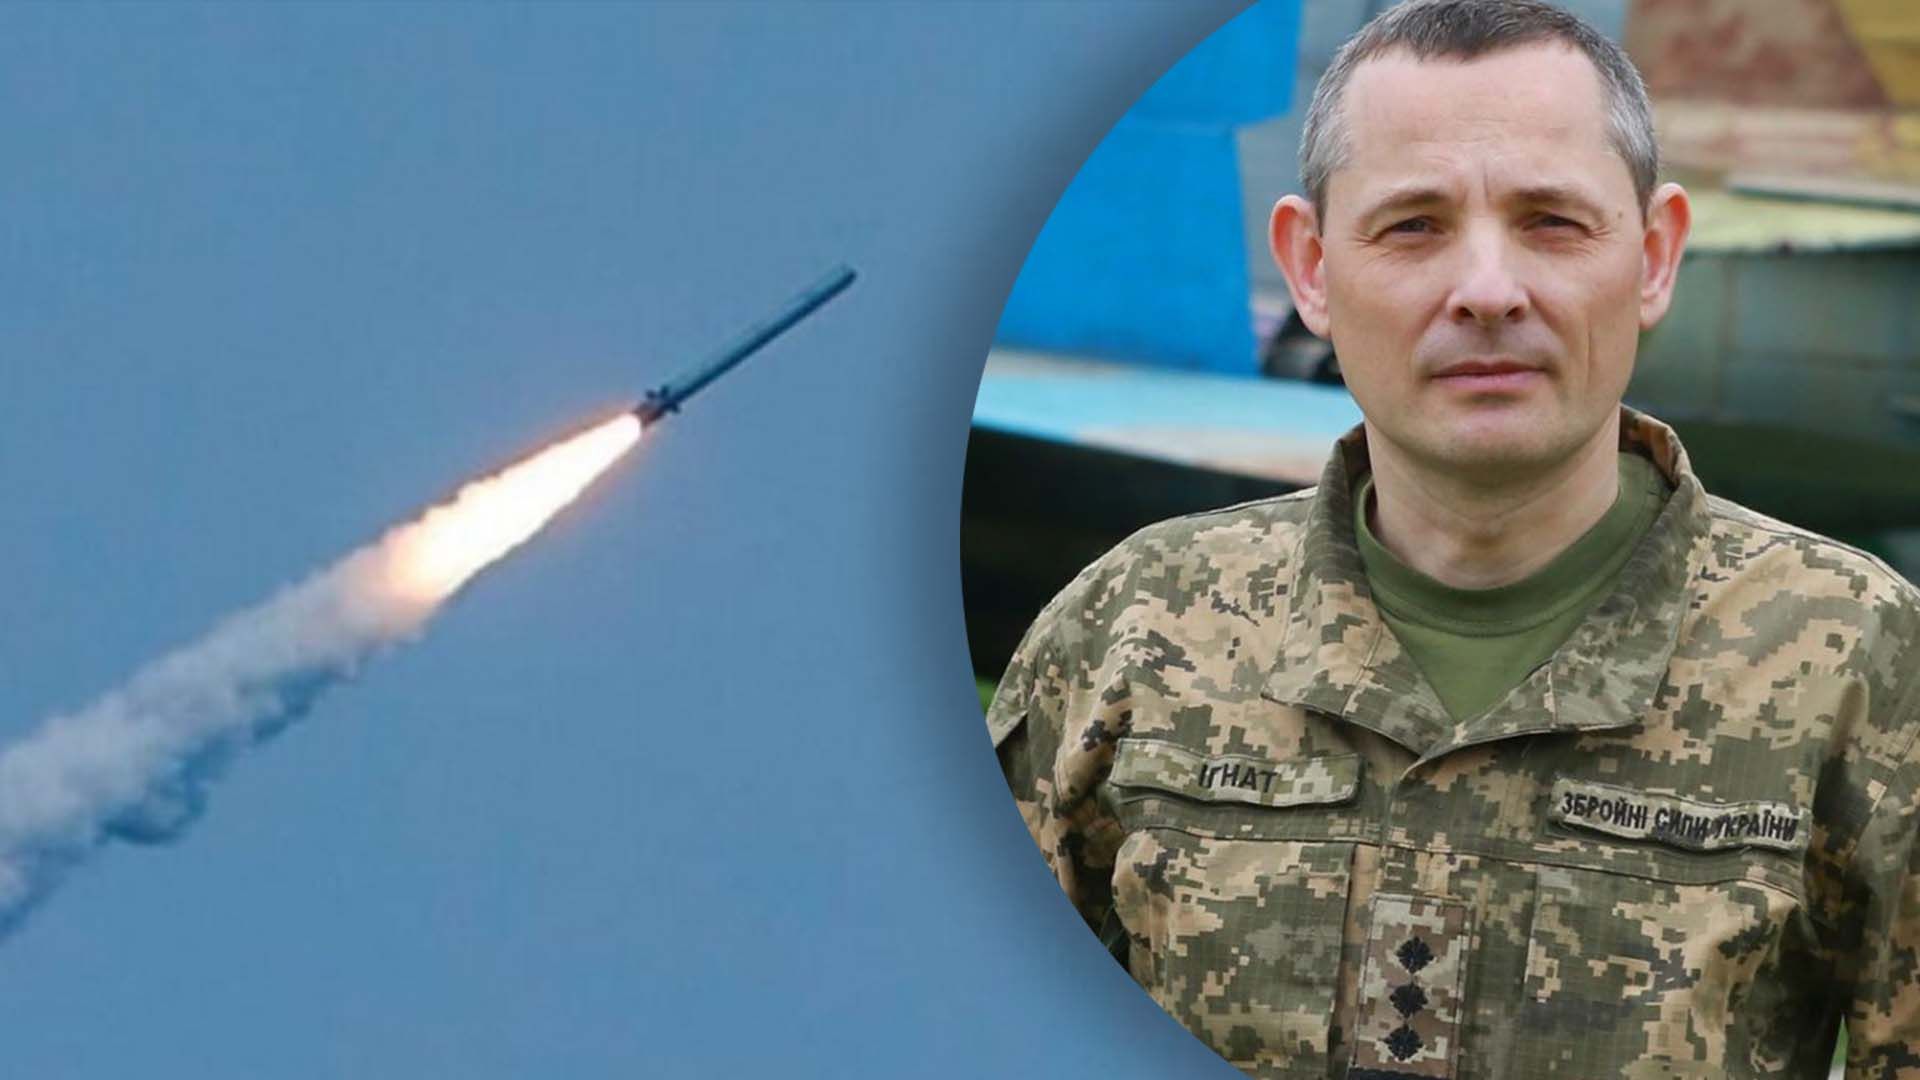 Игнат рассказал, чем Россия атаковала Украину